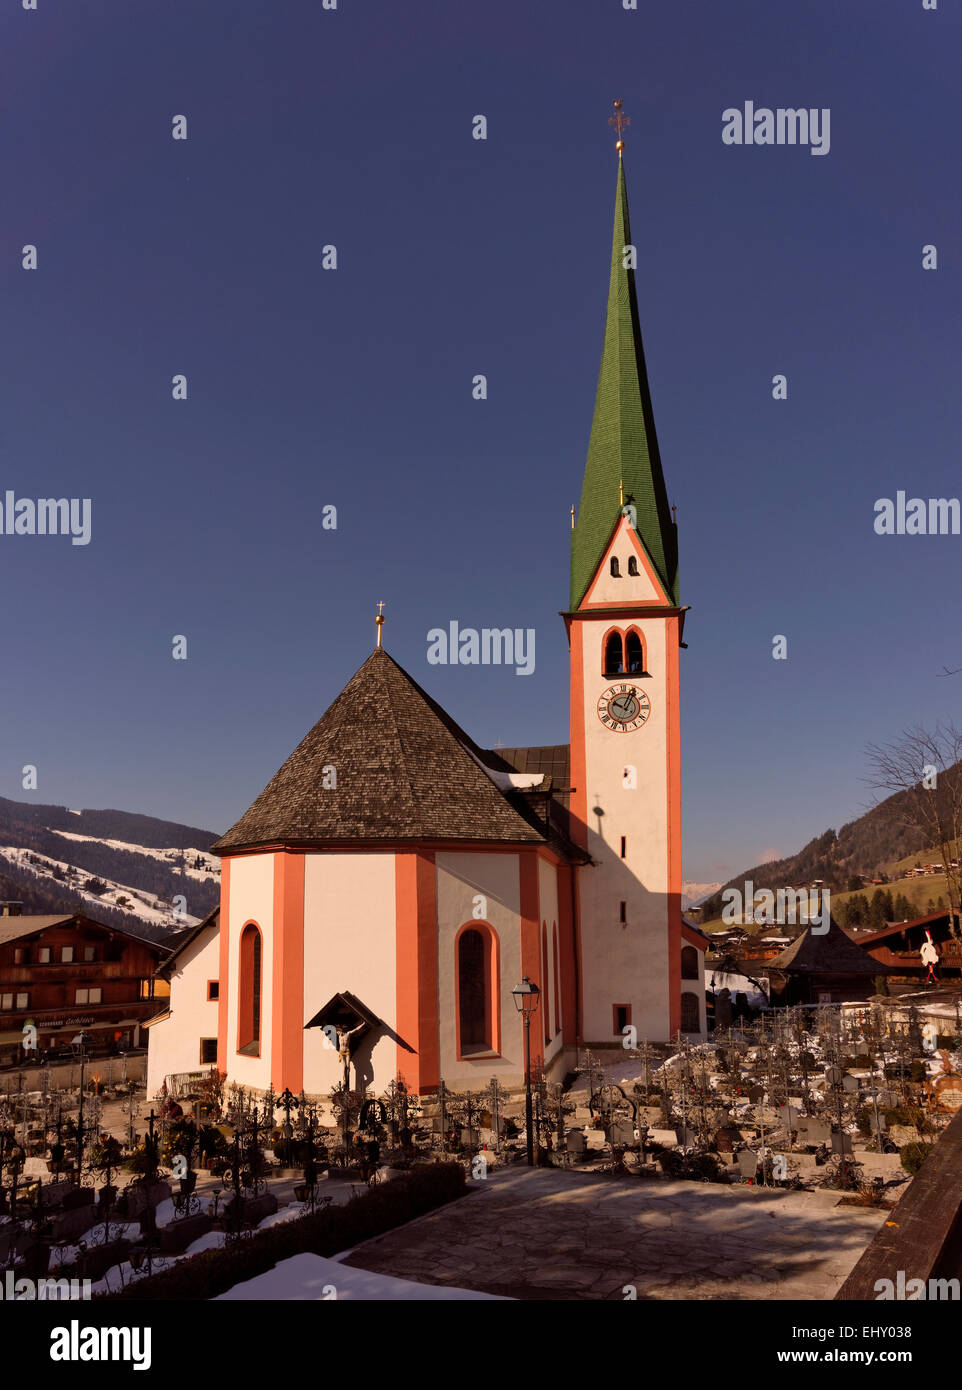 St Oswald la chiesa nel villaggio di Alpbach, Tirolo dell'Austria. In Austria il villaggio più belli e ben nota stazione sciistica. Foto Stock